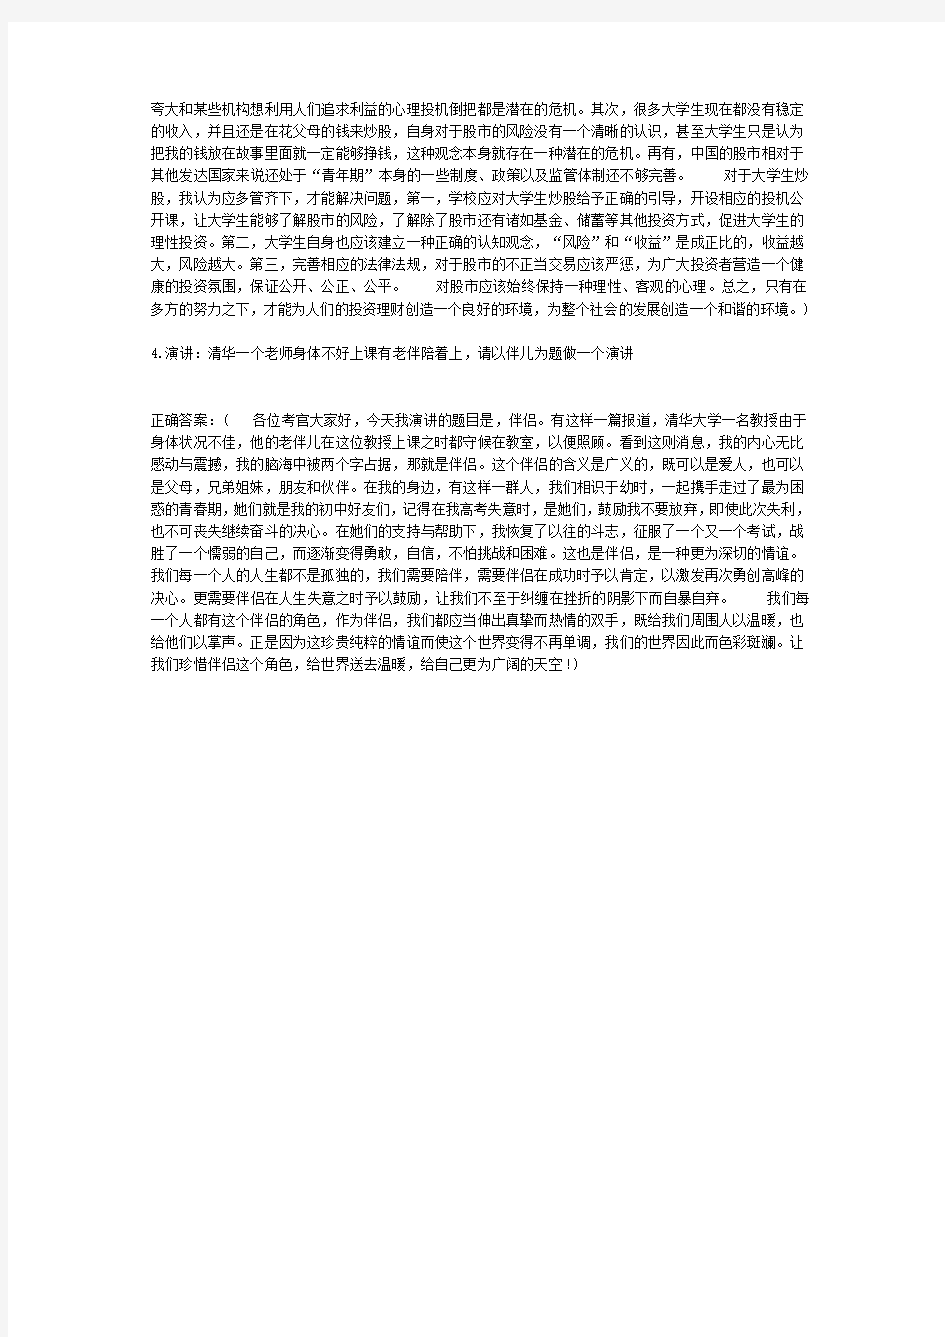  河北省公务员面试真题2015年6月7日下午